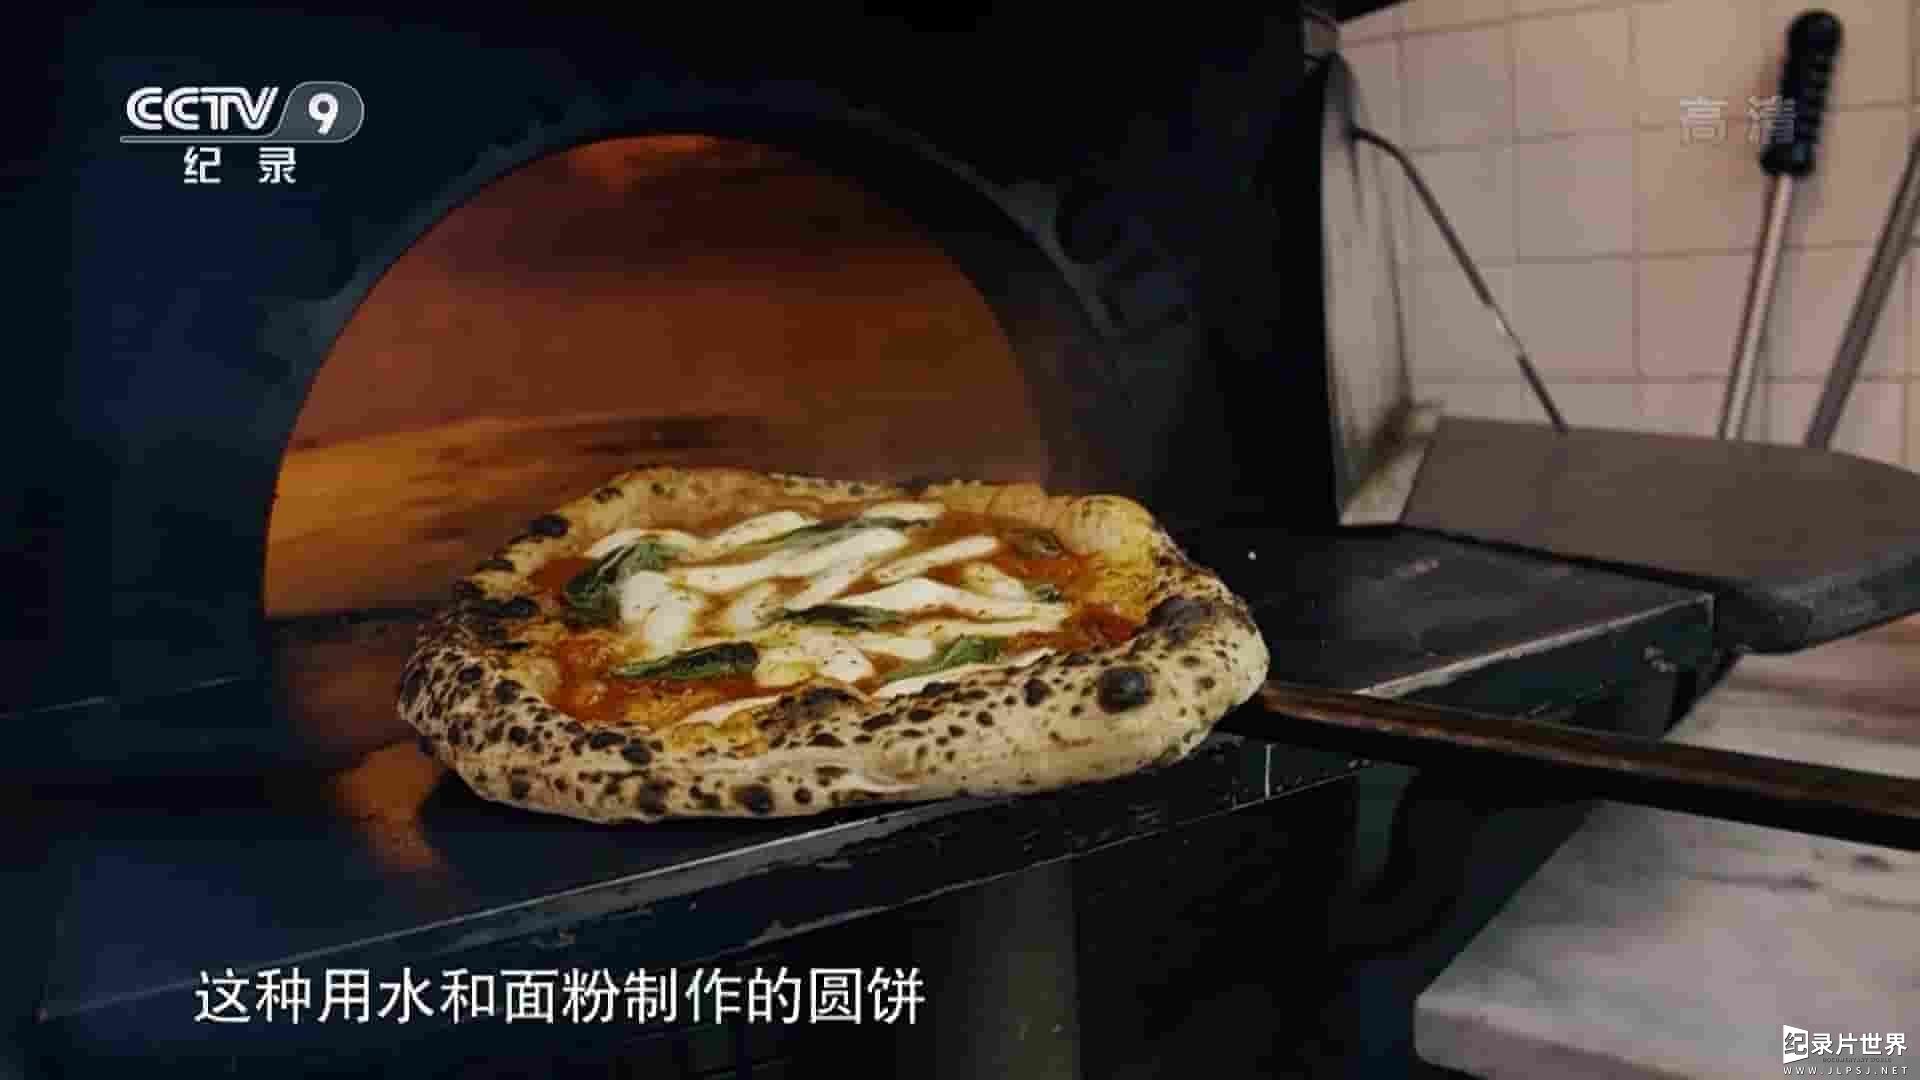 央视纪录片《比萨寻味之旅 TASTING PiZZA 2018》全1集